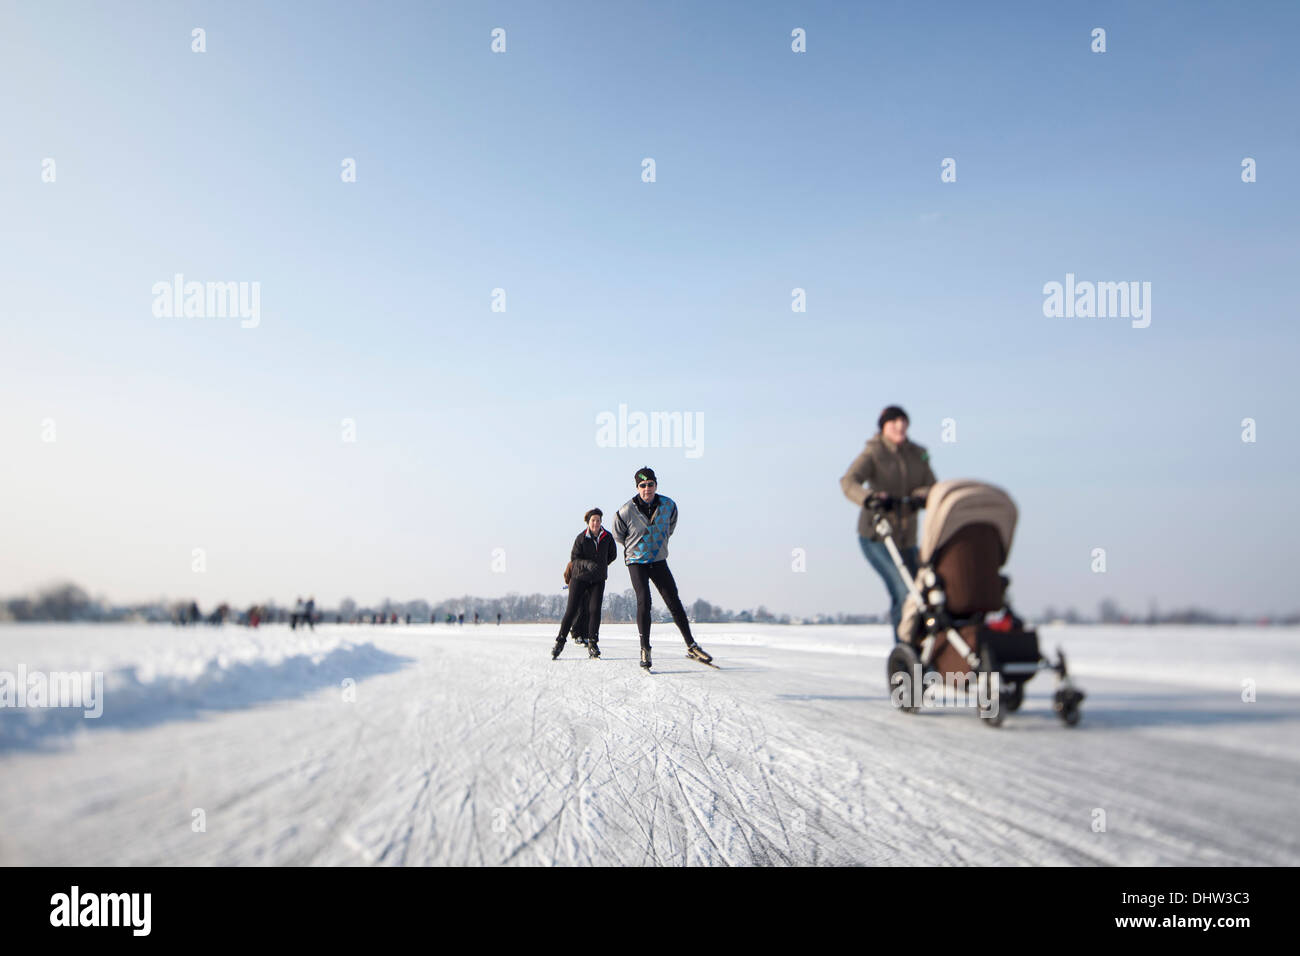 Aux Pays-Bas, les lacs de Loosdrecht, appelé Loosdrechtse Plassen. L'hiver. Le patinage sur glace. Femme avec buggy Banque D'Images